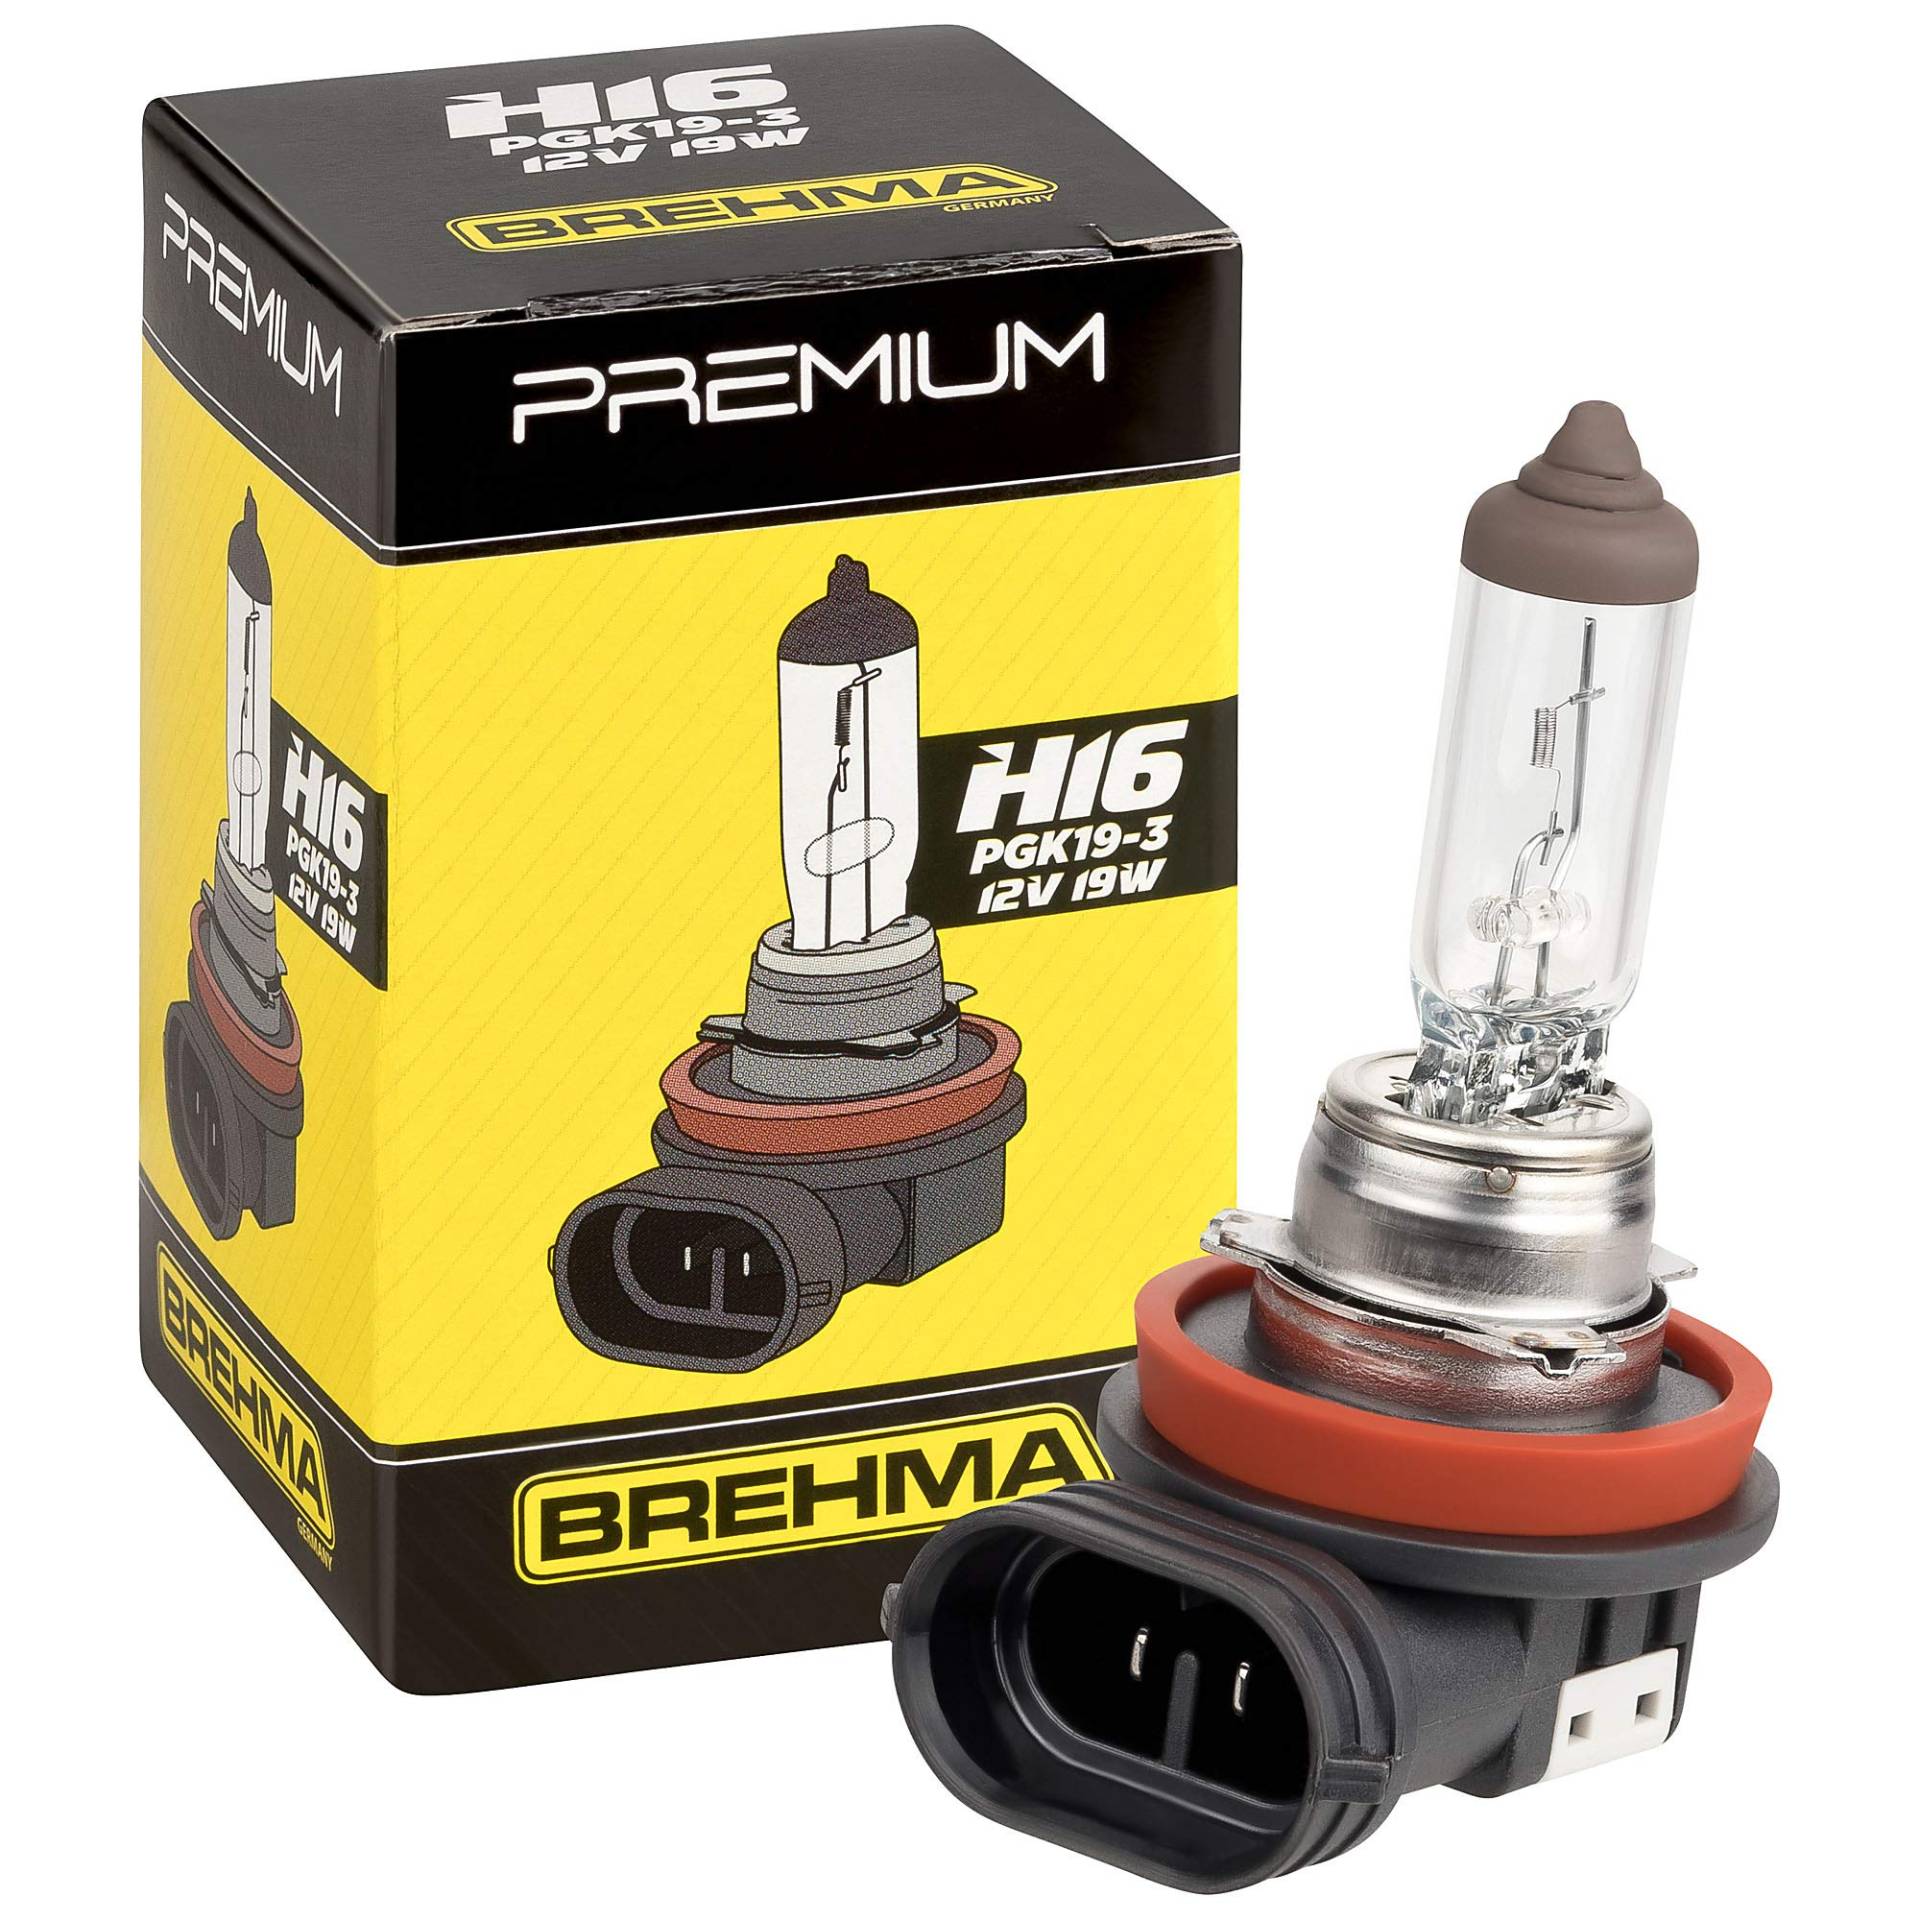 BREHMA Premium 90063 H16 Halogen Lampe 12V 19W von BREHMA